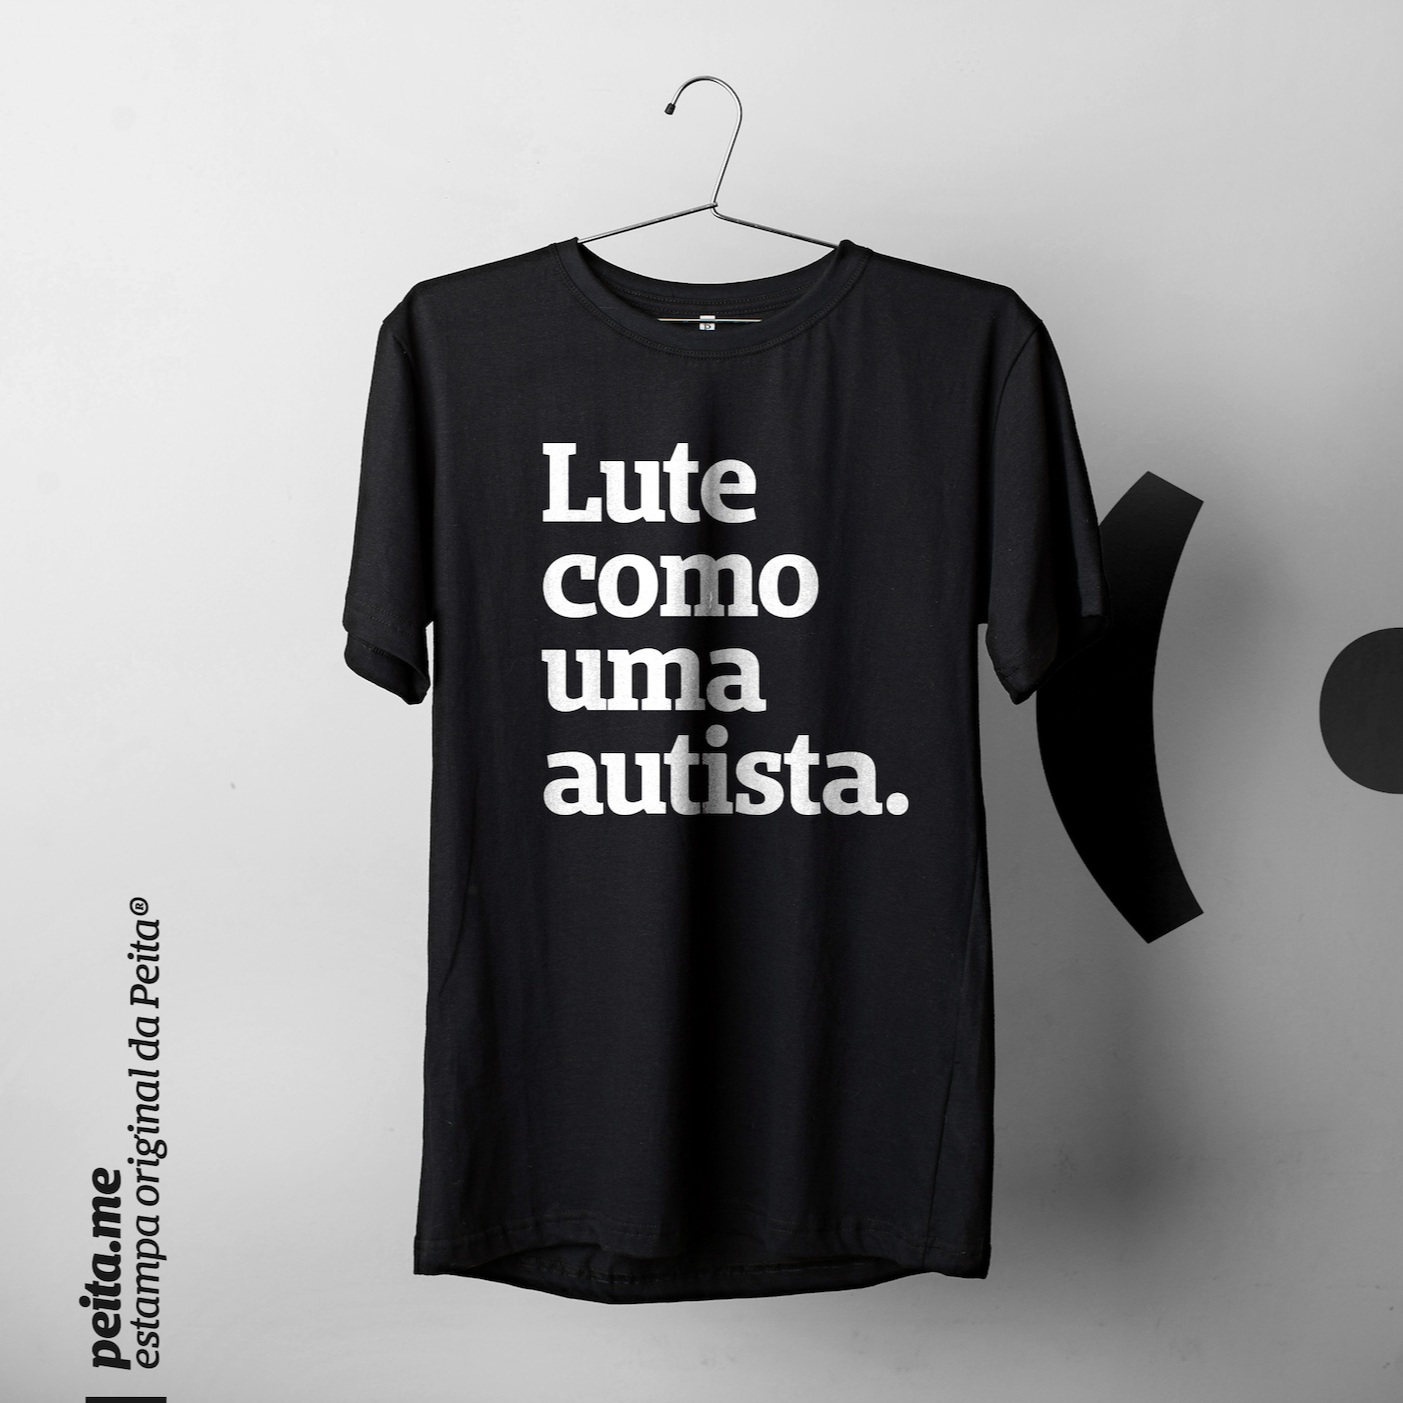 Foto preta e branca de uma camiseta preta com a frase lute como uma autista em estampada branco, pendurada em um cabide. Fundo cinza claro.